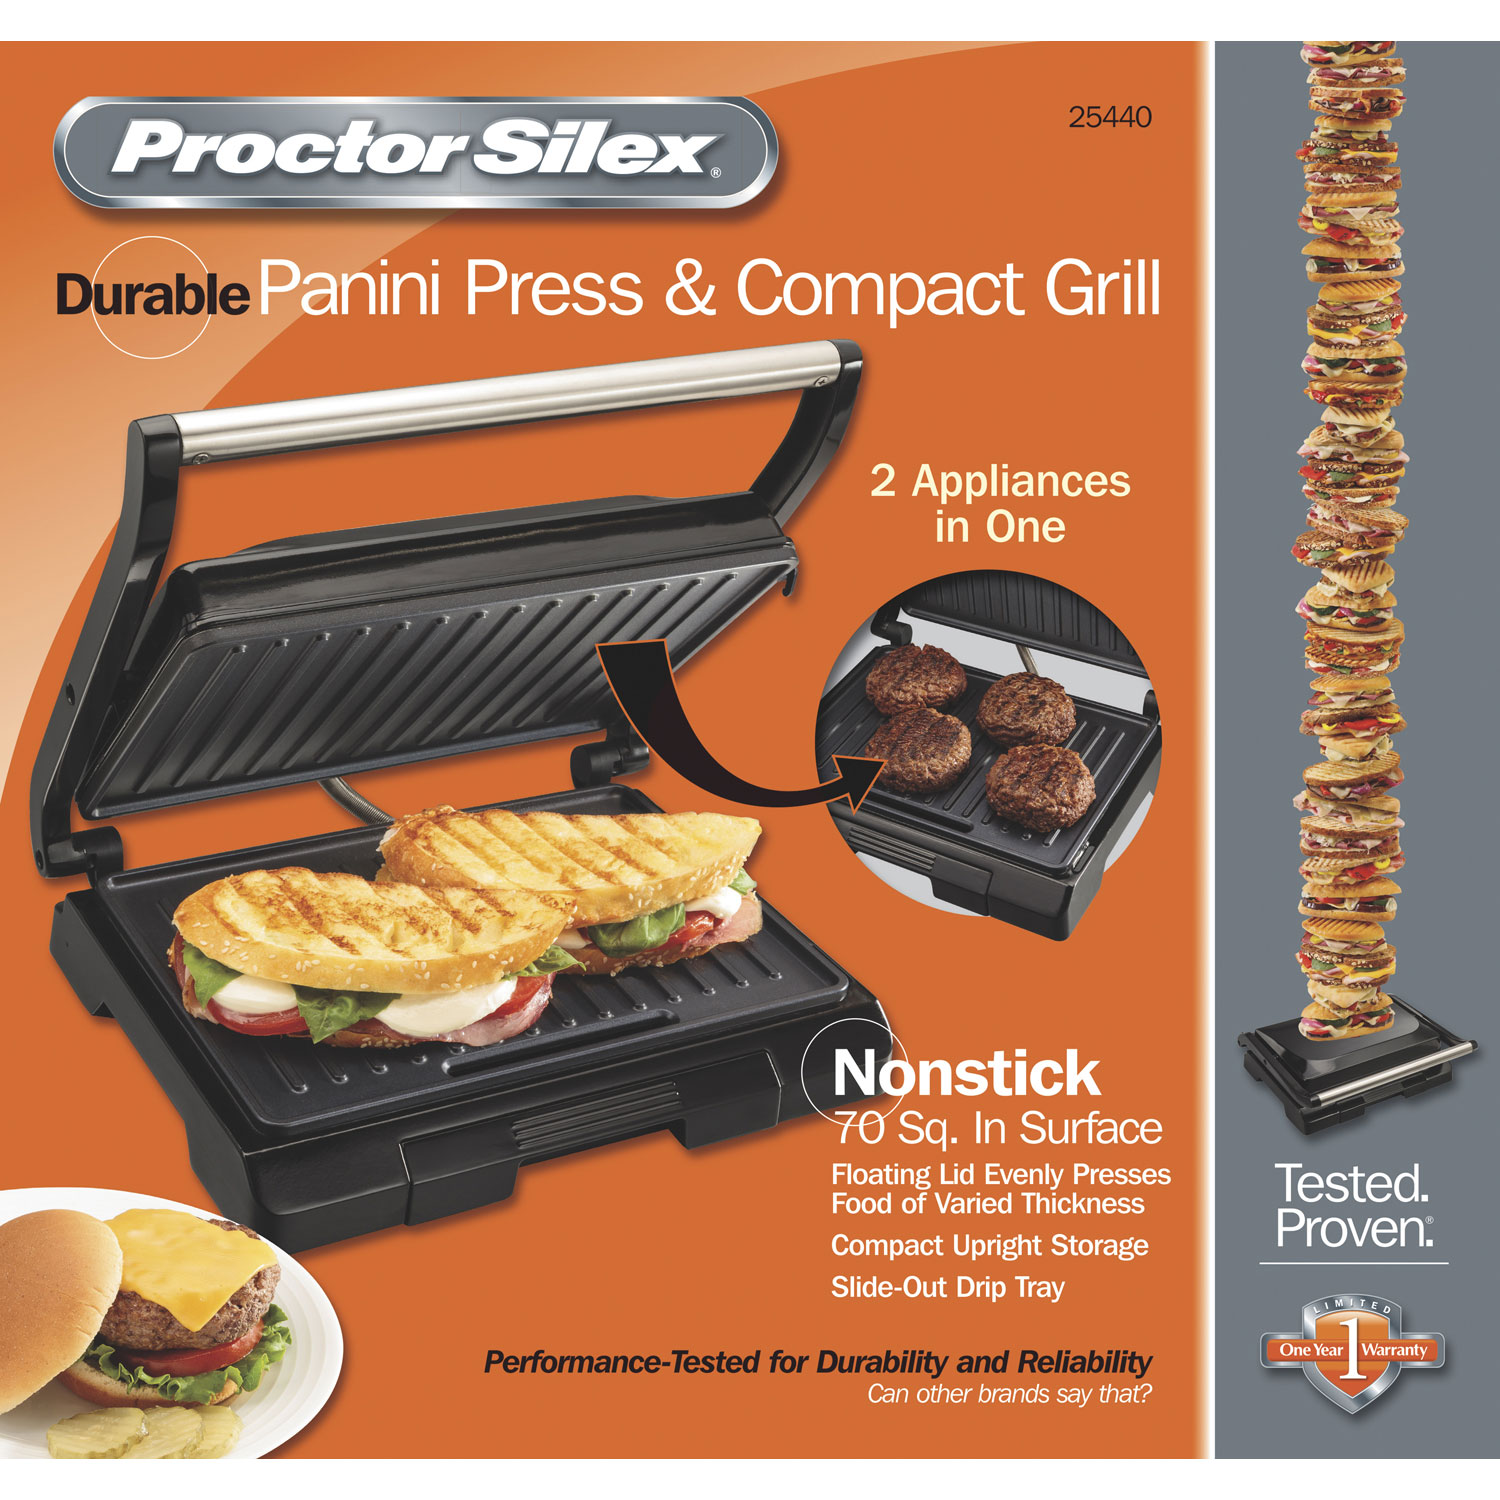 2-in-1 Panini Press & Compact Grill - Model 25440 ProctorSilex.com